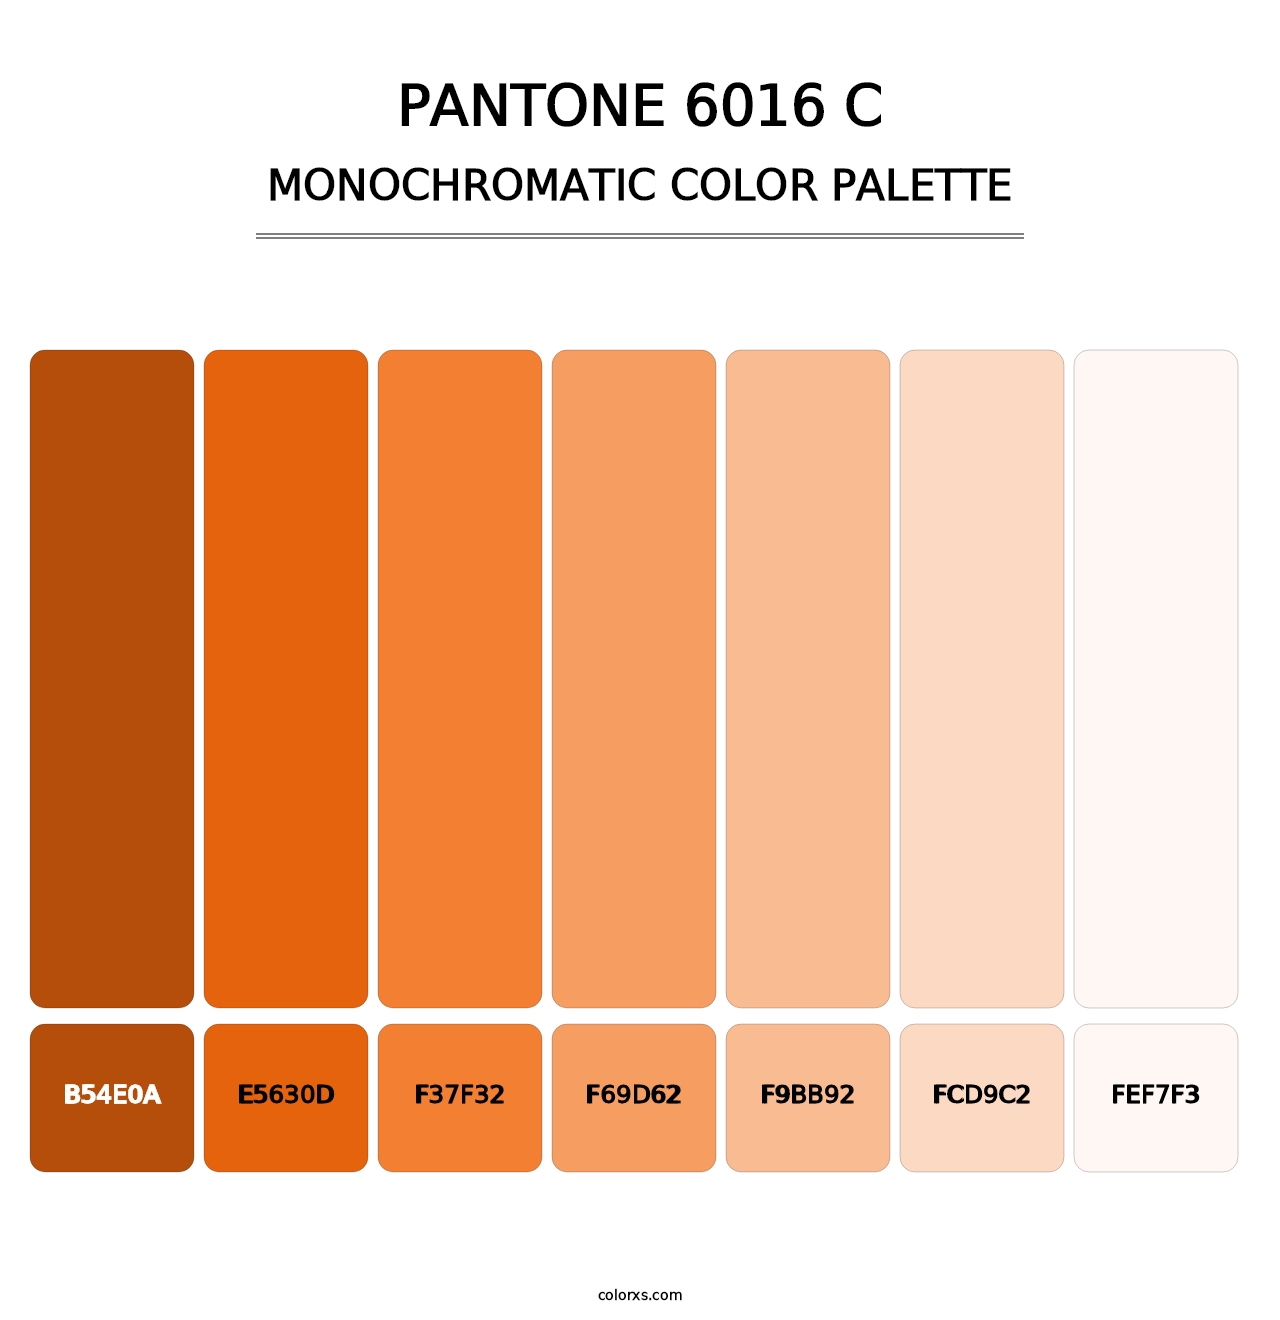 PANTONE 6016 C - Monochromatic Color Palette